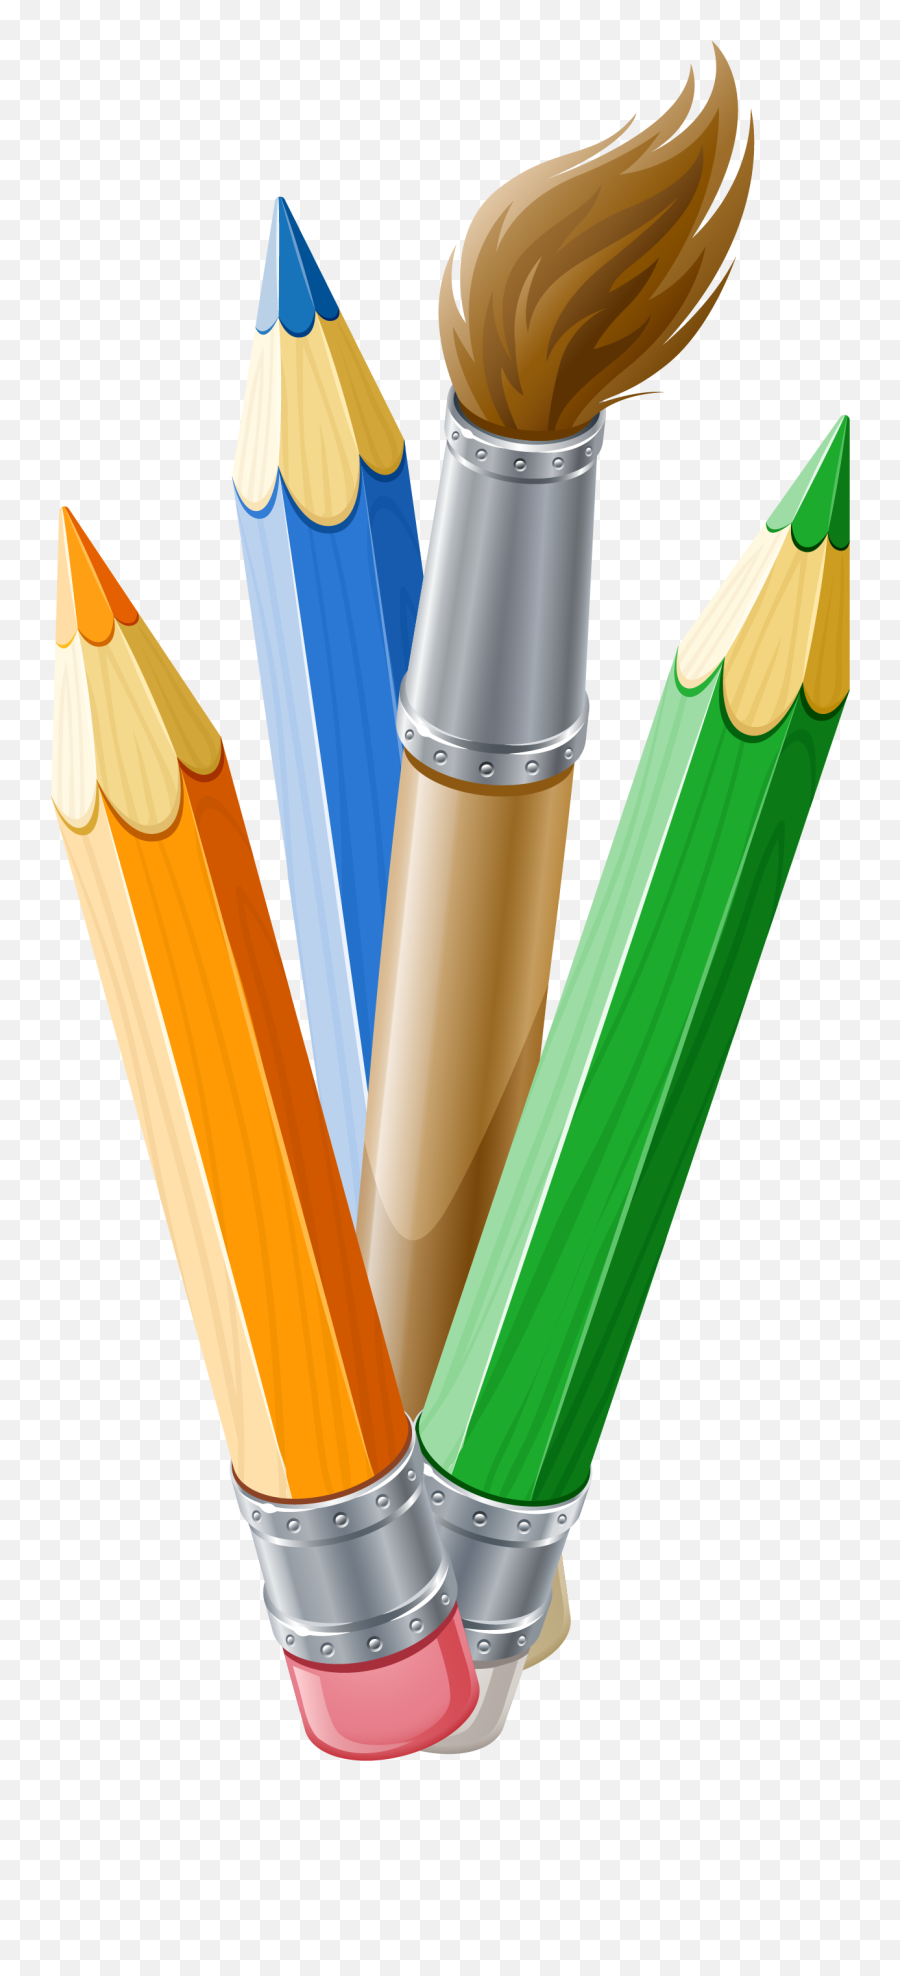 Paintbrush Clipart Pens Transparent Free - Paint Brush And Pencil Png,Paintbrush Clipart Transparent